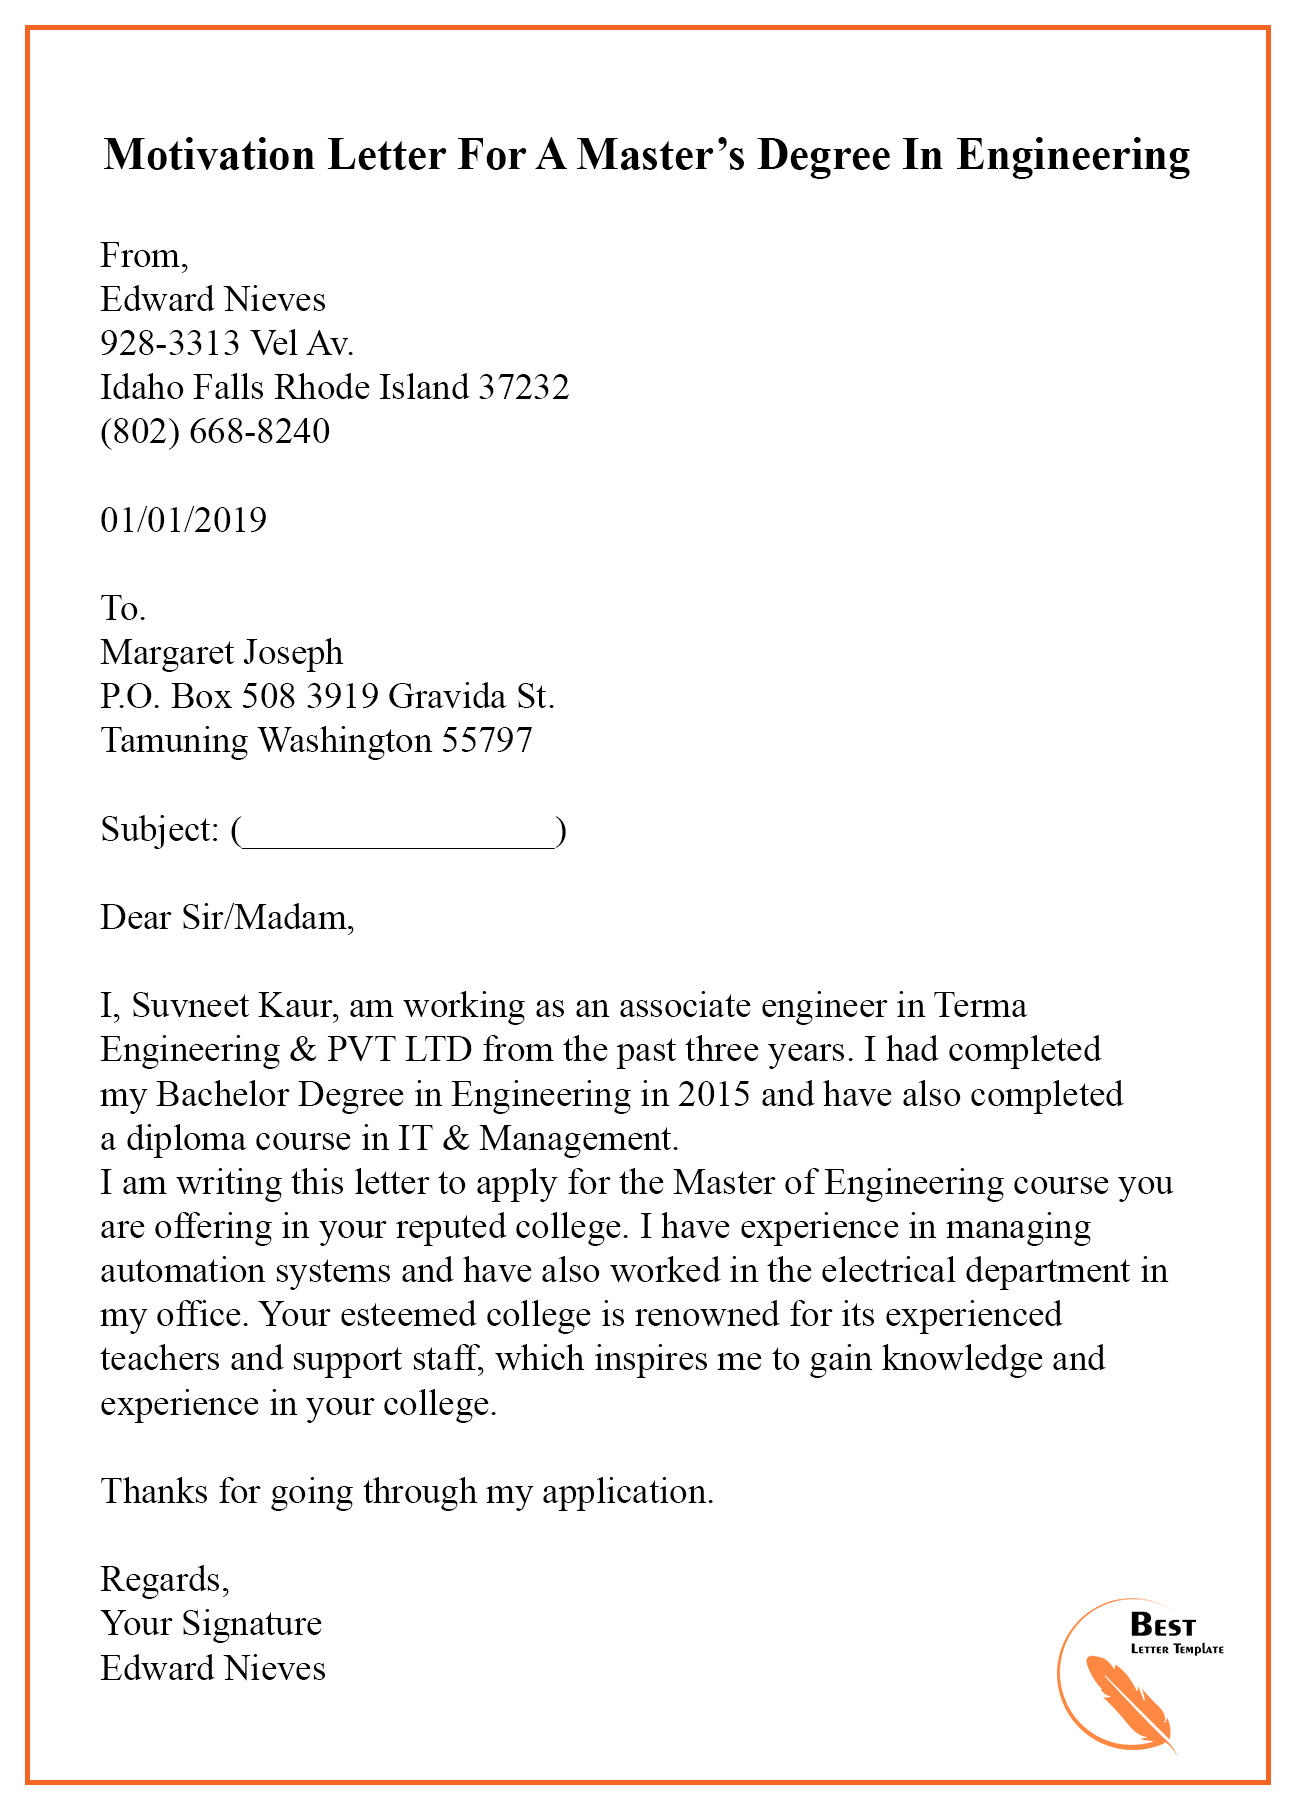 Letter Of Interest For Masters Program from bestlettertemplate.com